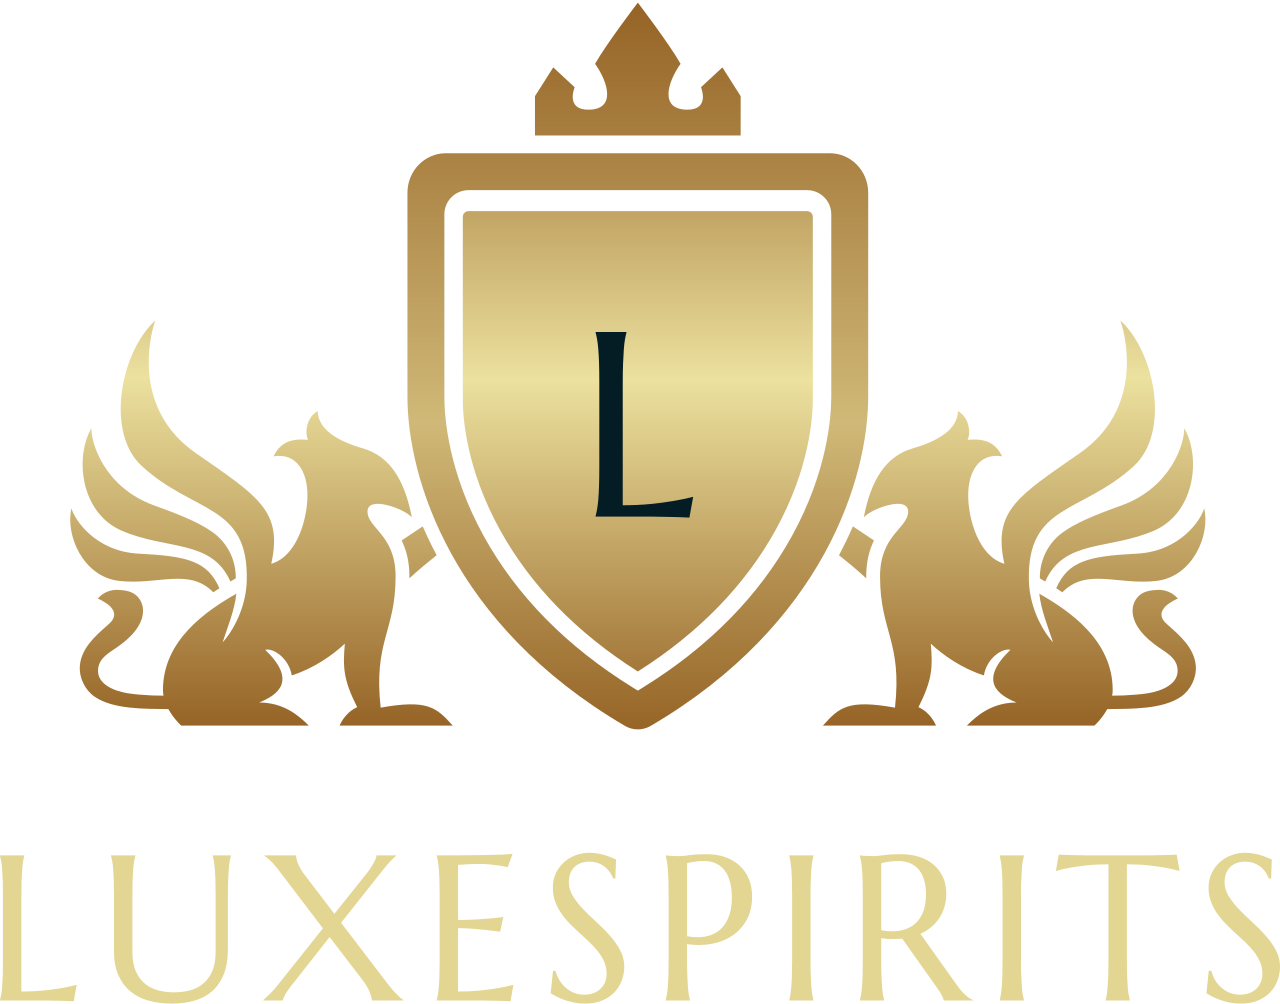 Luxespirits's logo